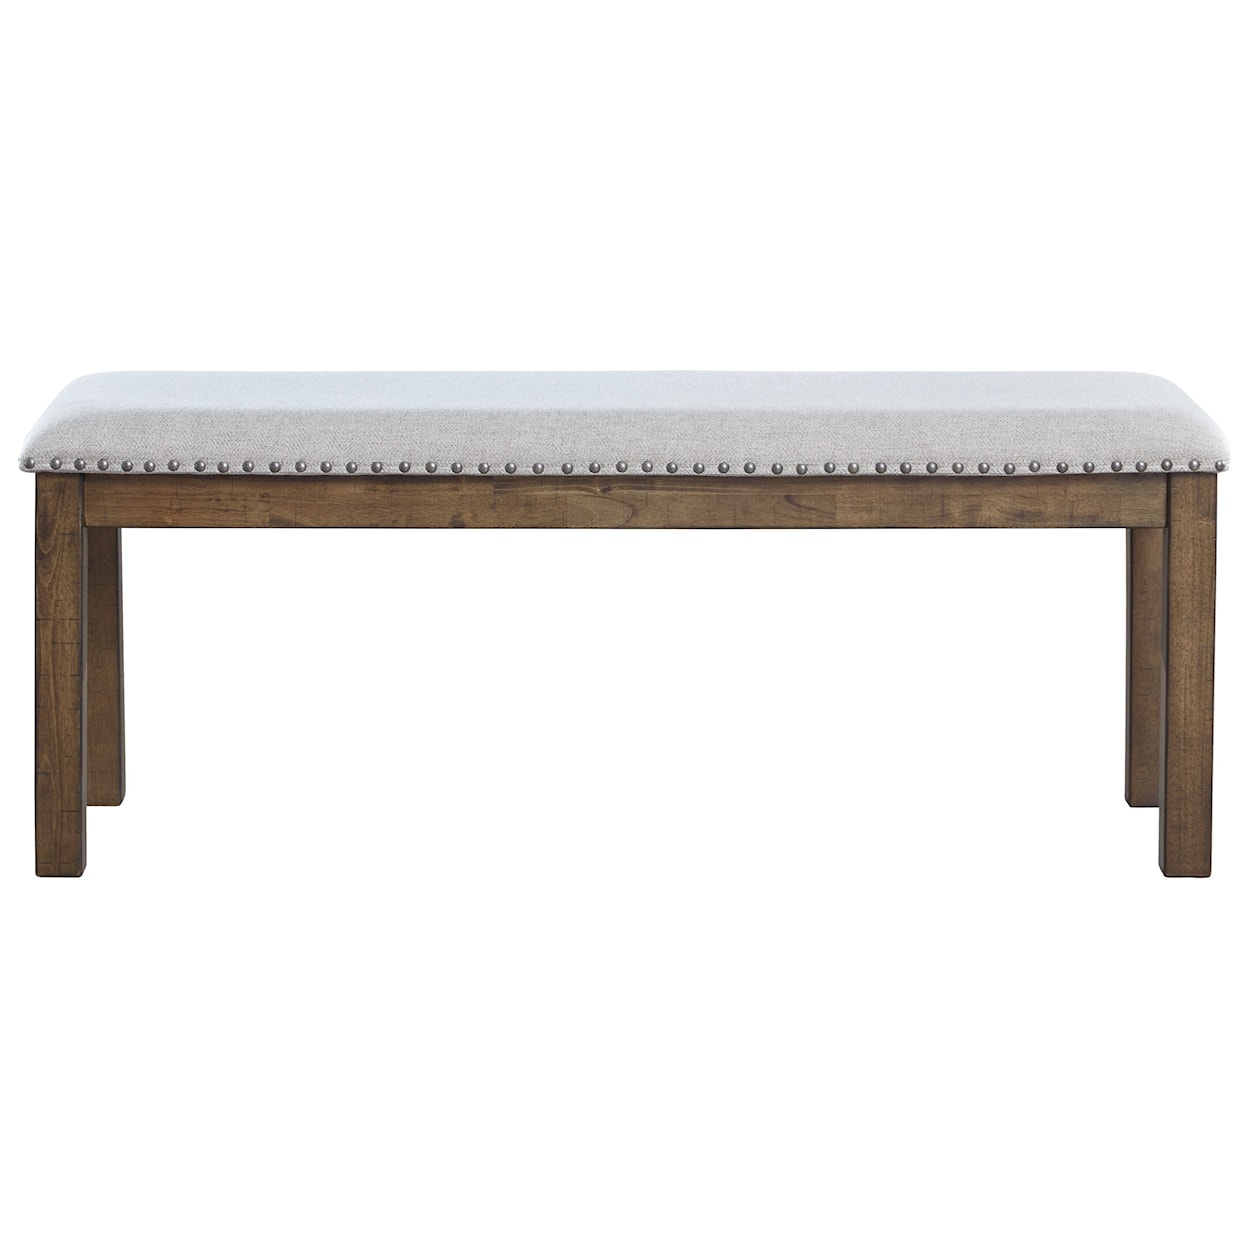 Ashley Furniture Signature Design Moriville Upholstered Bench